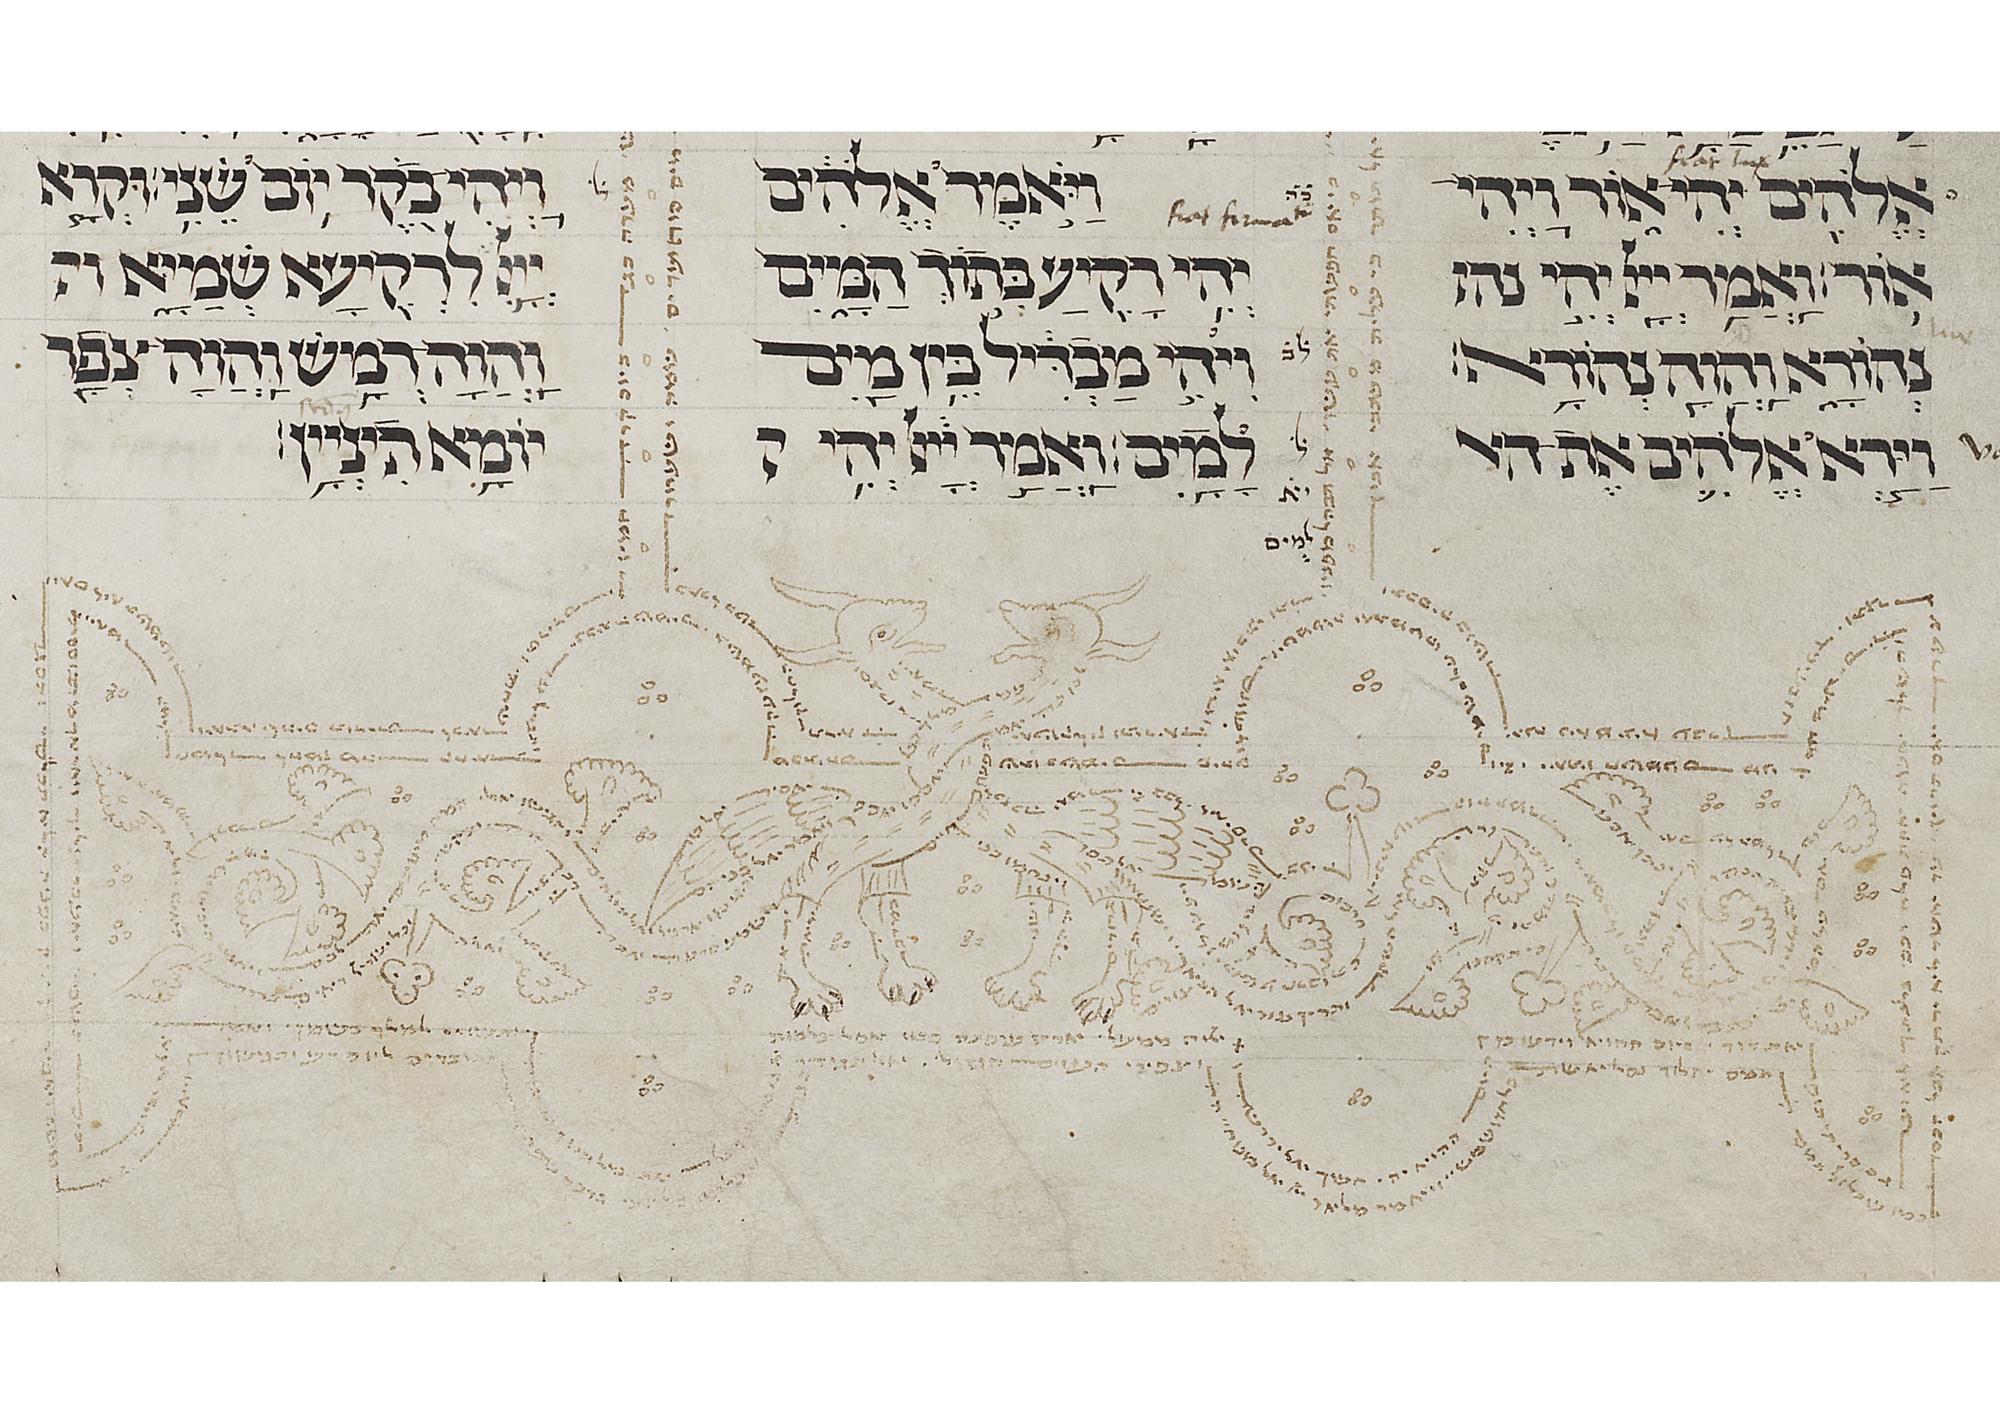 Ms. or. fol. 1212, Farbe der Tinte des masoretischen Kommentars